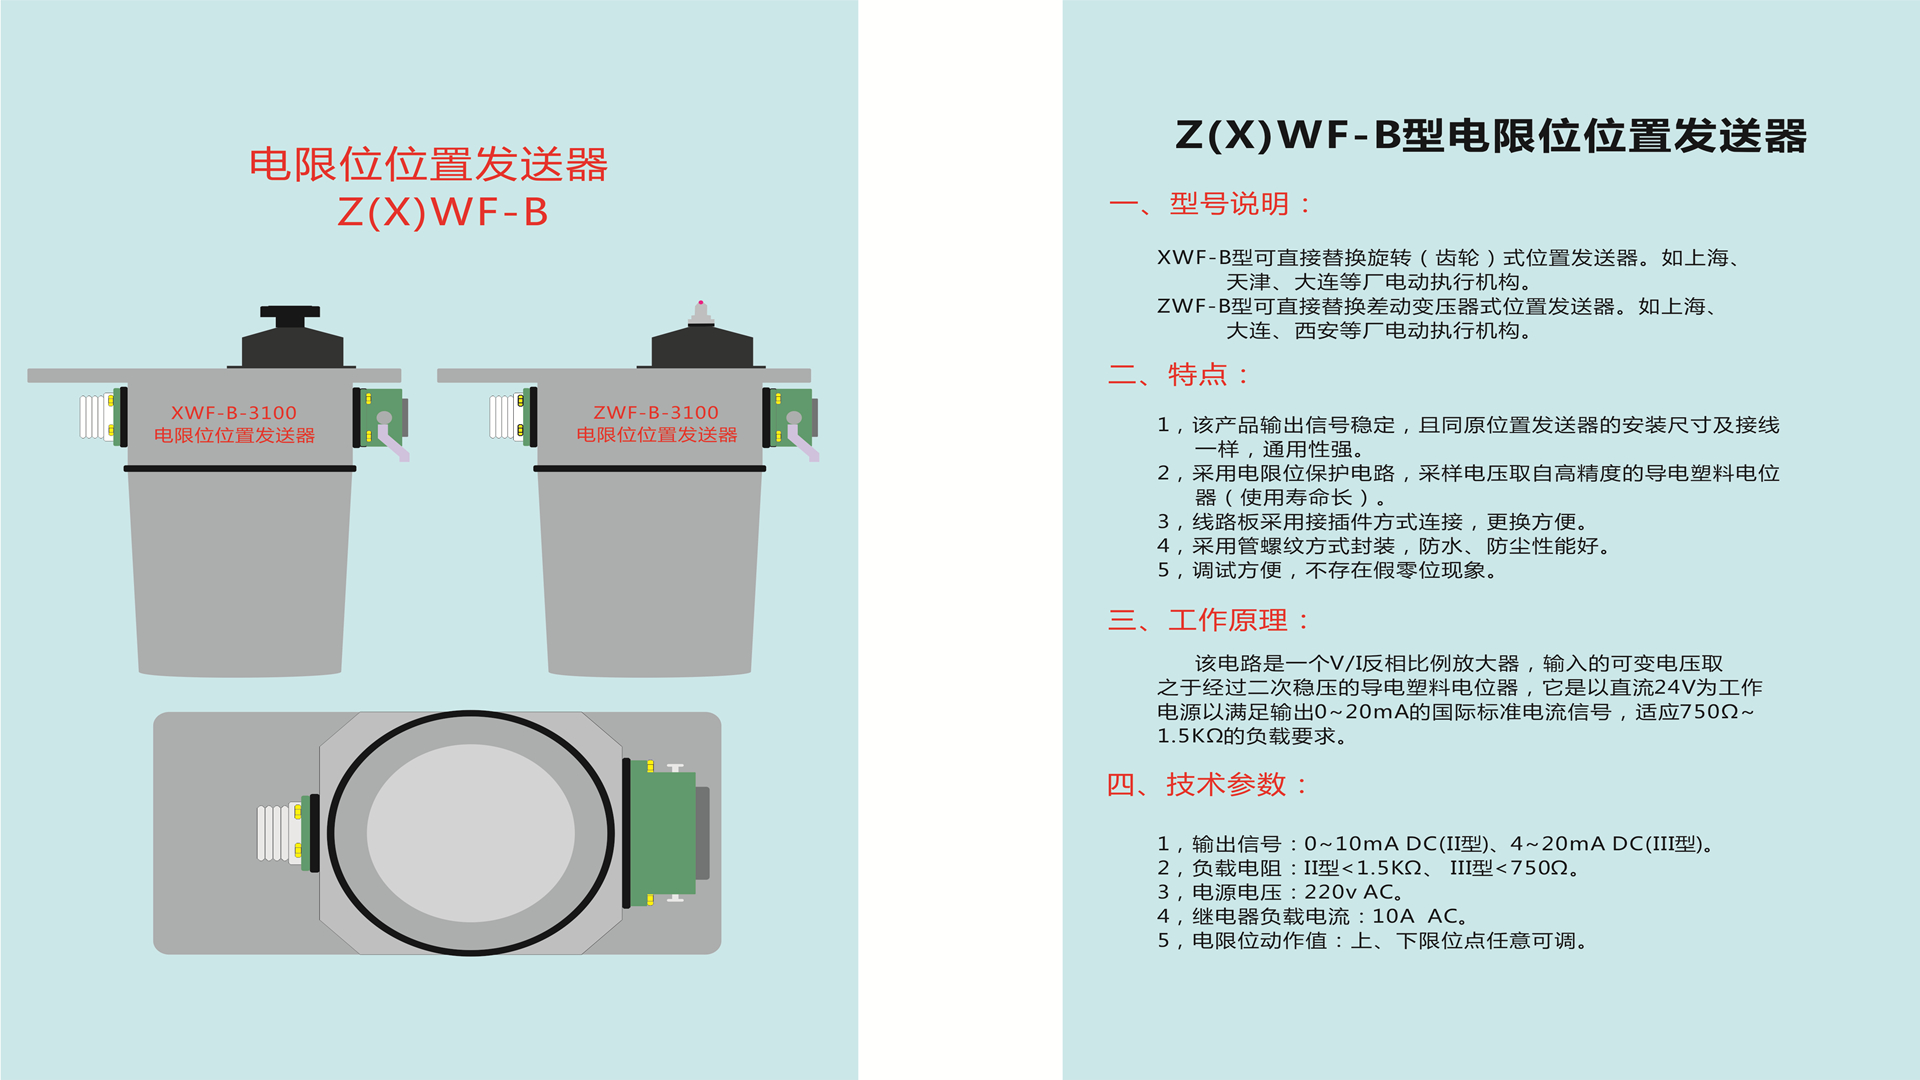 Z(X)WF-B-310电限位位置发送器说明书2